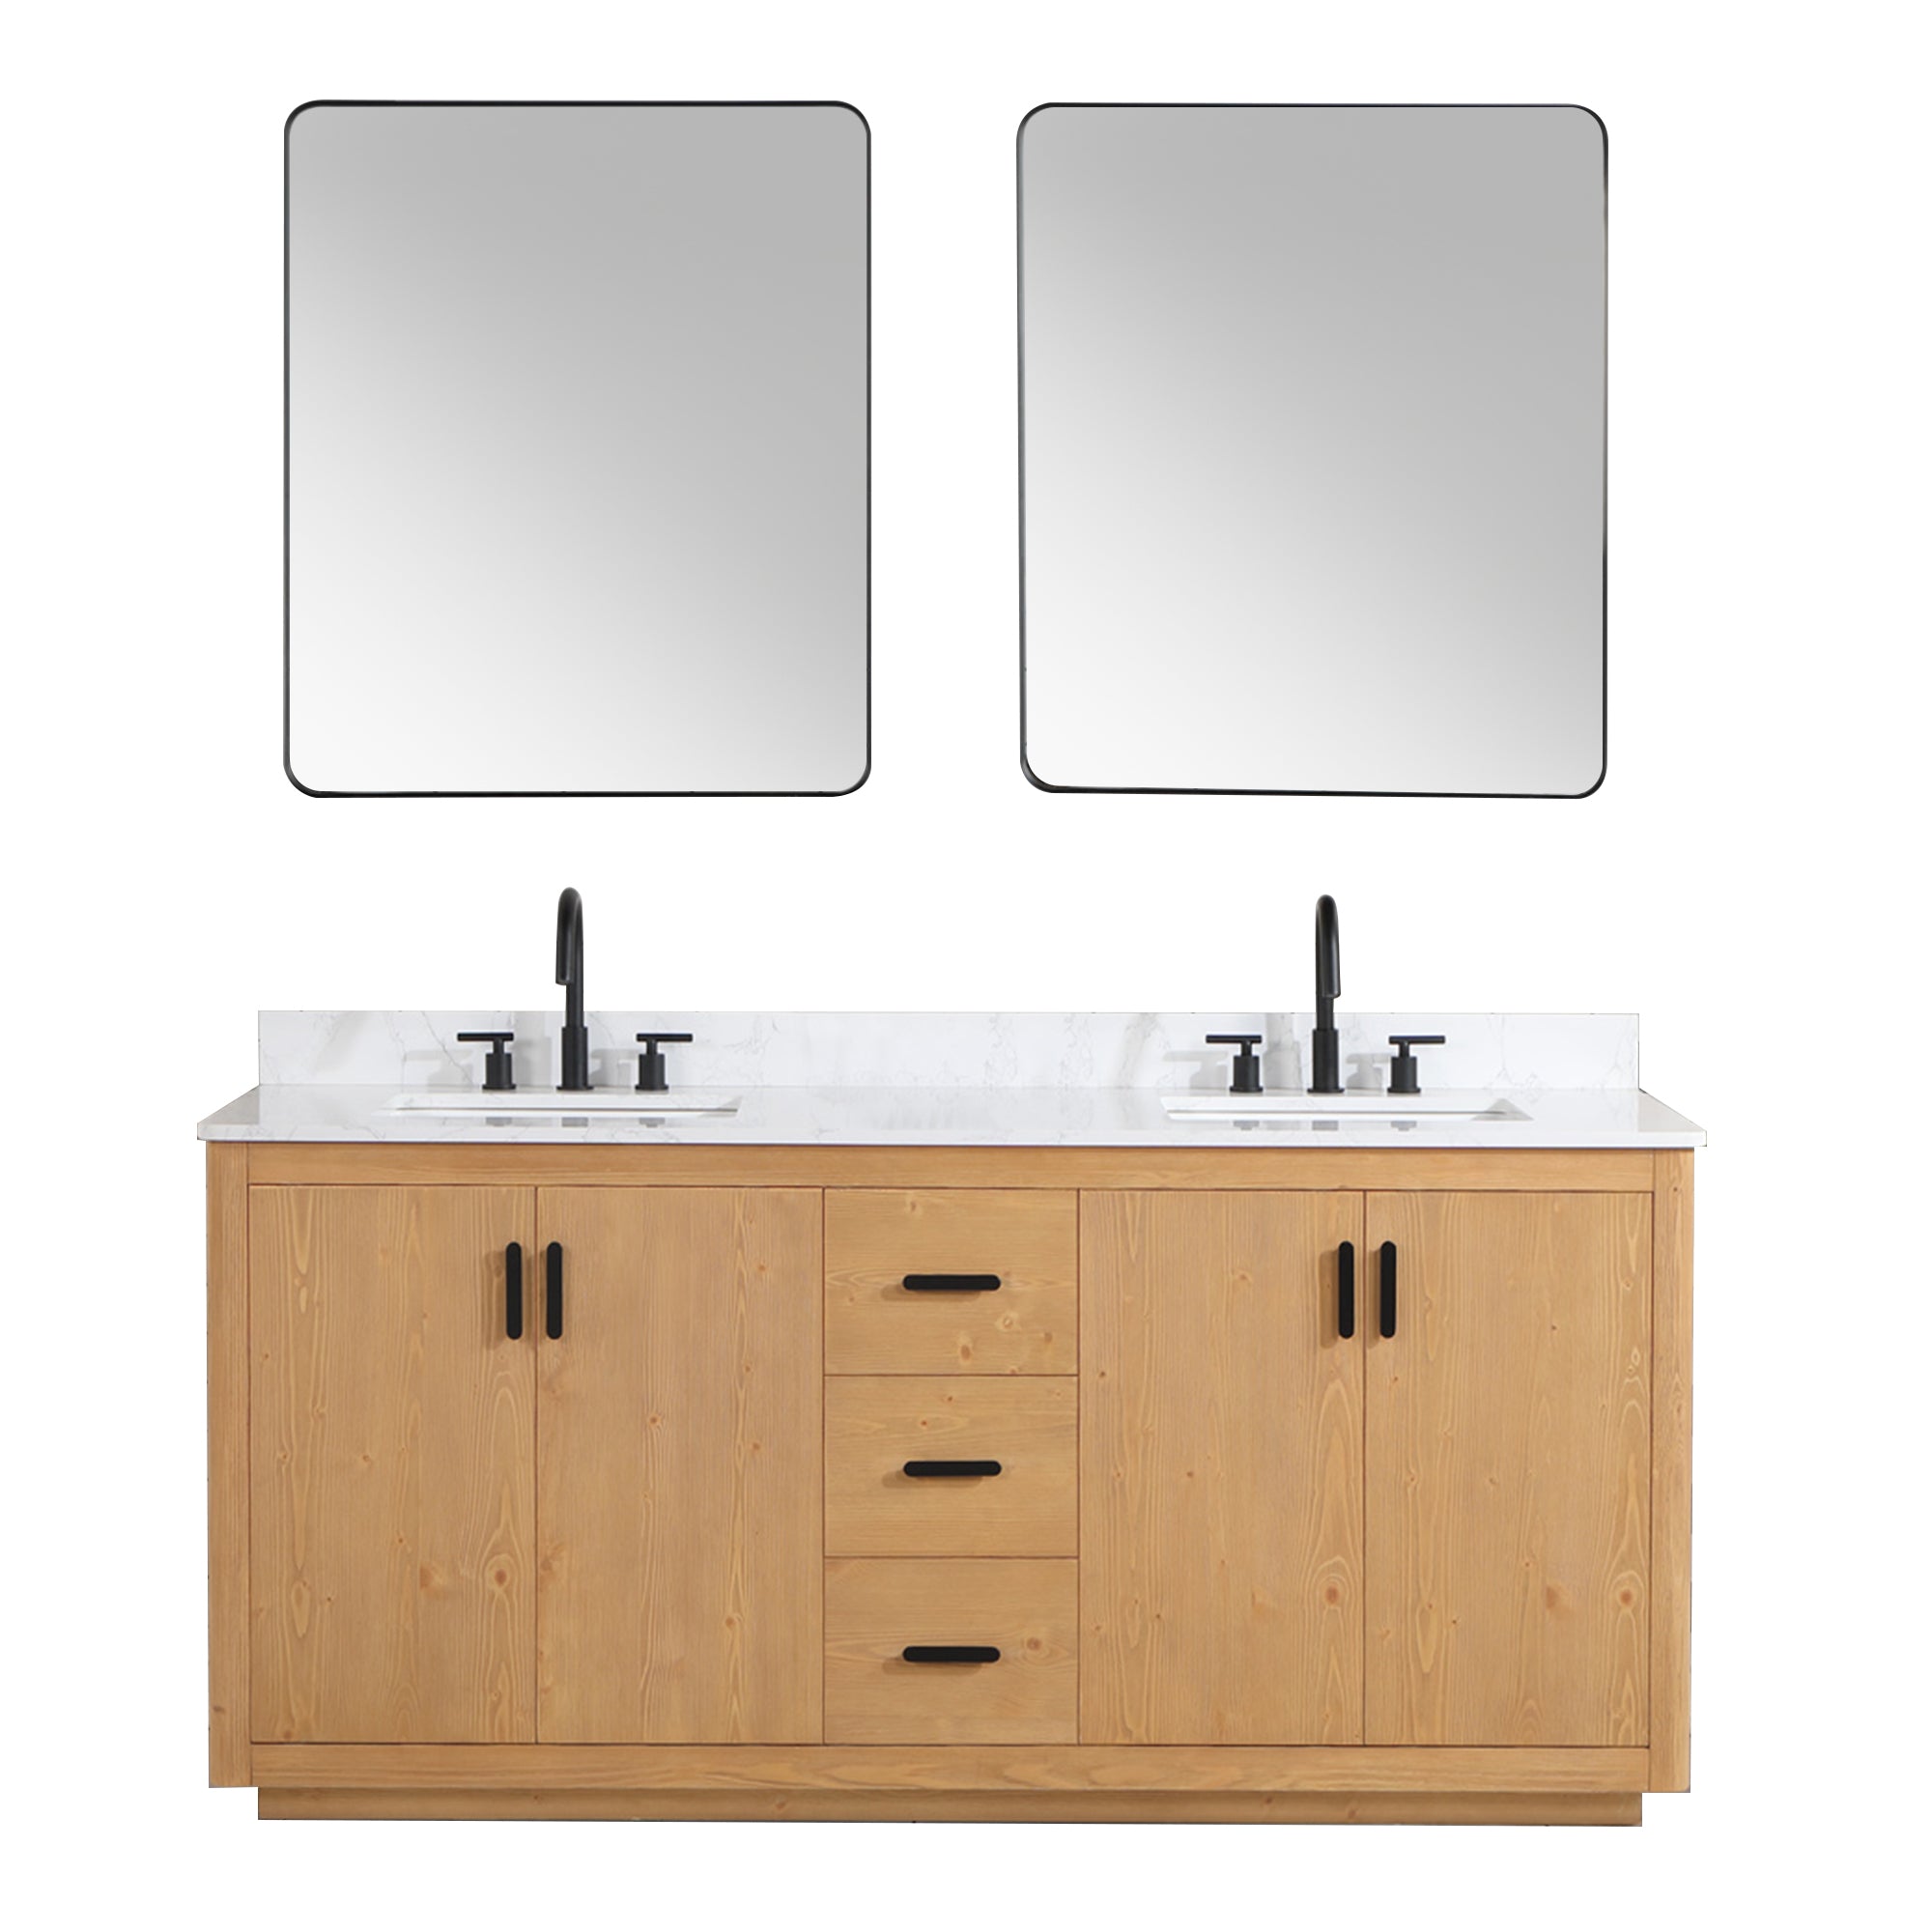 Perla 72" Double Bathroom Vanity with Grain White Composite Stone Countertop